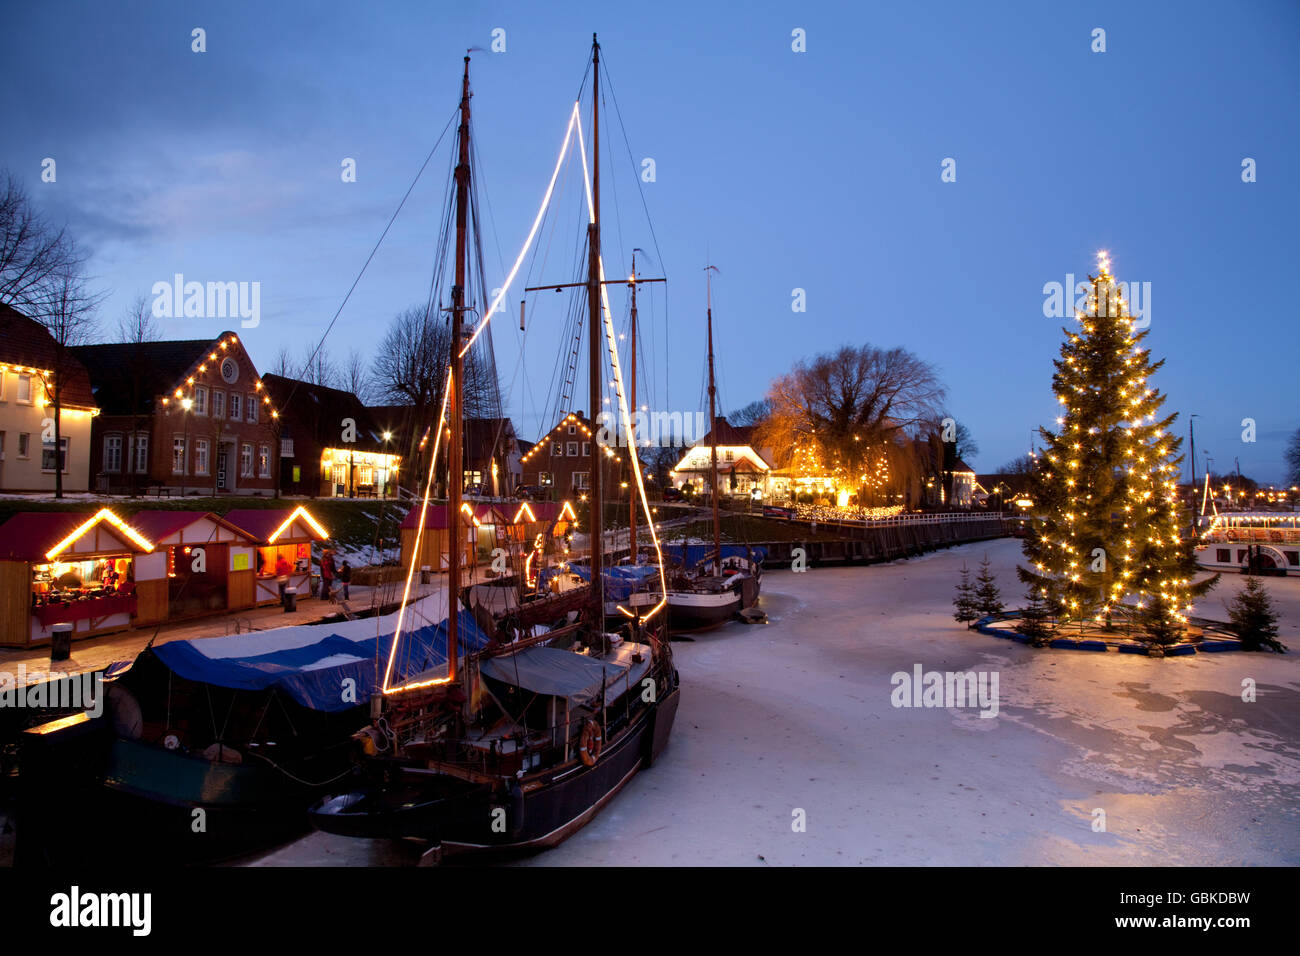 Museumshafen, Museumshafen mit Weihnachtsbeleuchtung, Nordseebad  Carolinensiel, Wittmund Region, Nordsee, Ostfriesland Stockfotografie -  Alamy